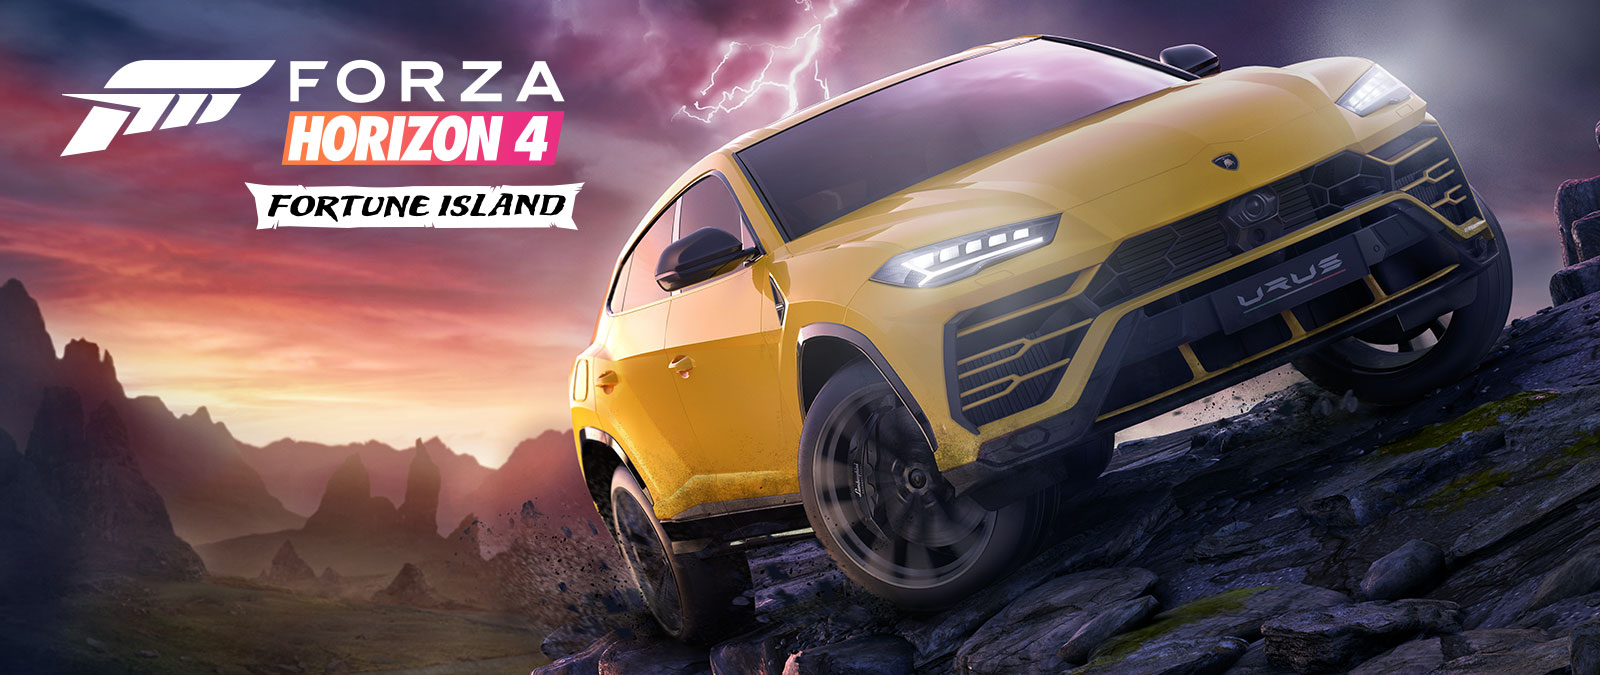 Forza Horizon 4 Fortune Island, keltainen Lamborghini Urus ajaa vaikeassa maastossa, taustalla salamointia